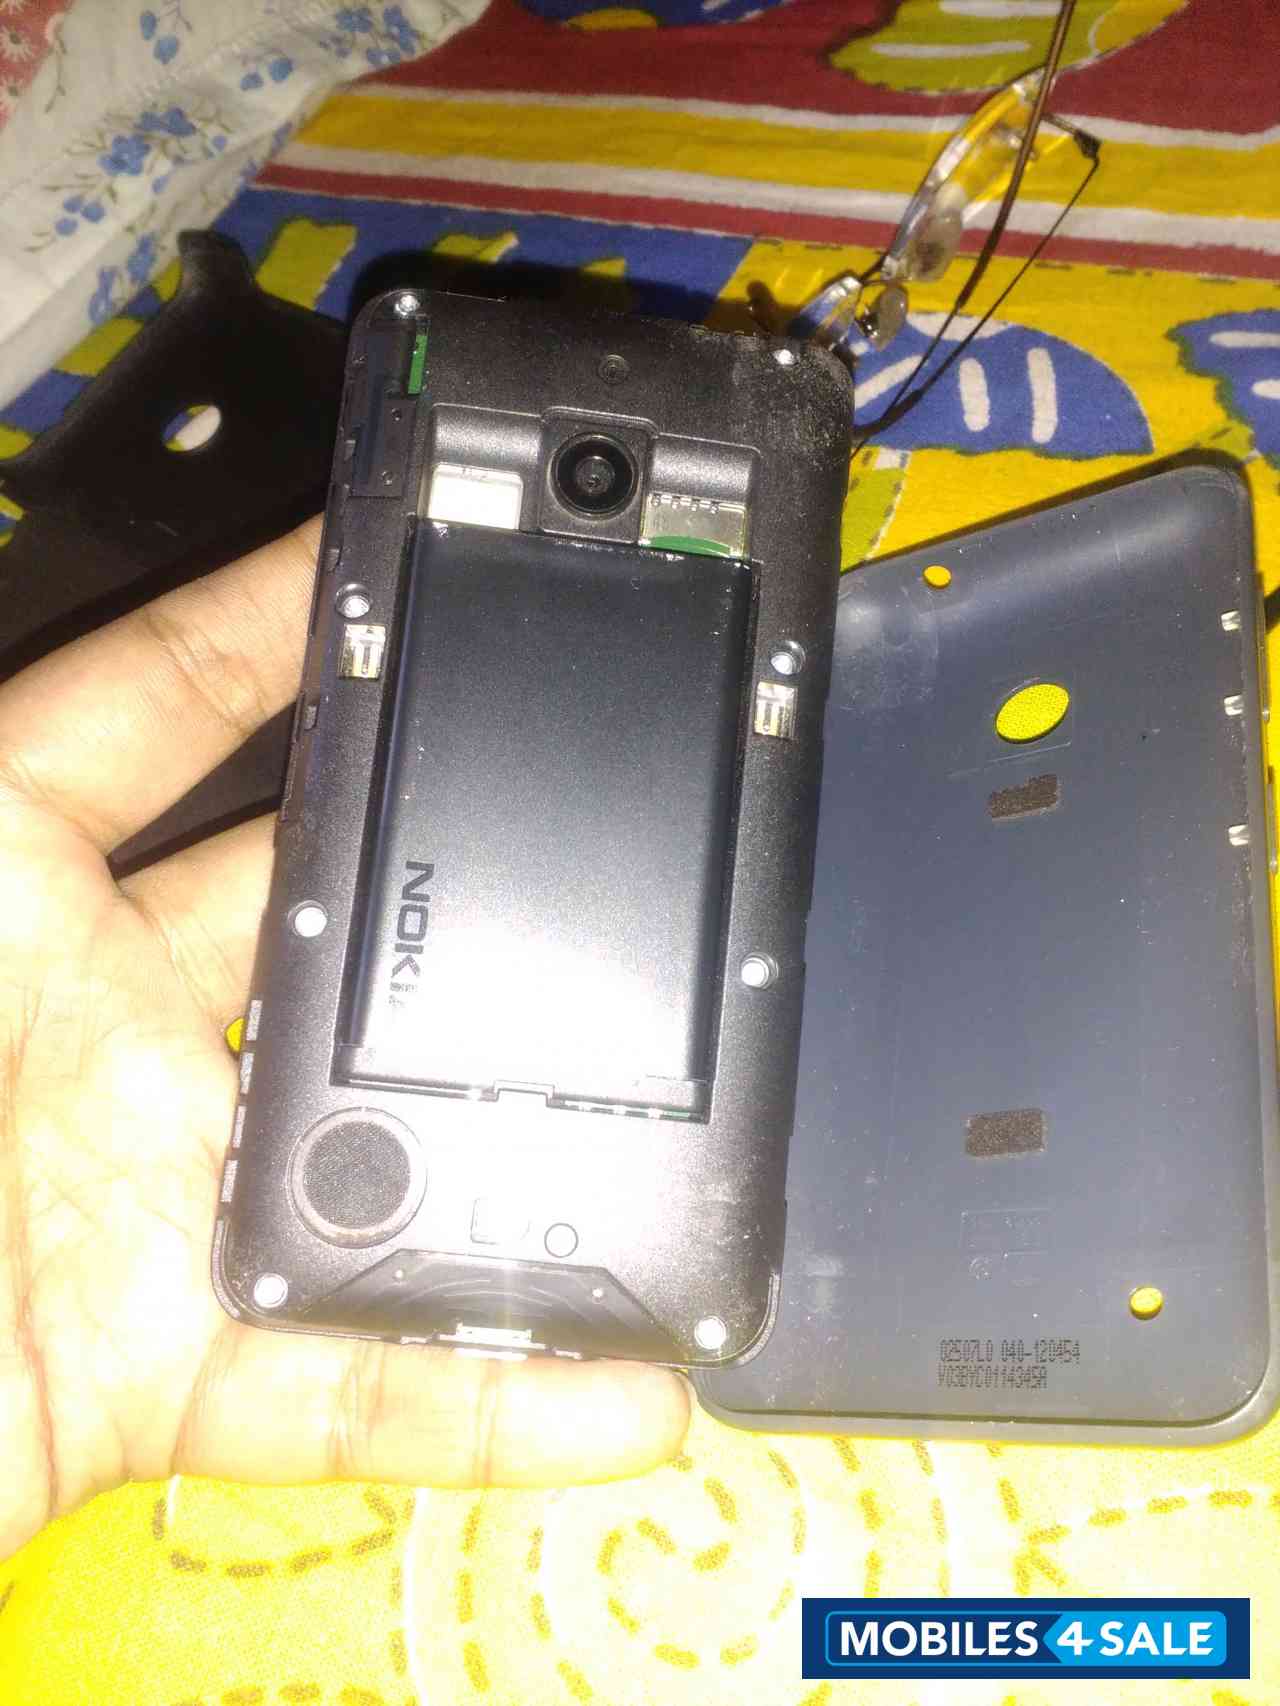 Black Nokia Lumia 530